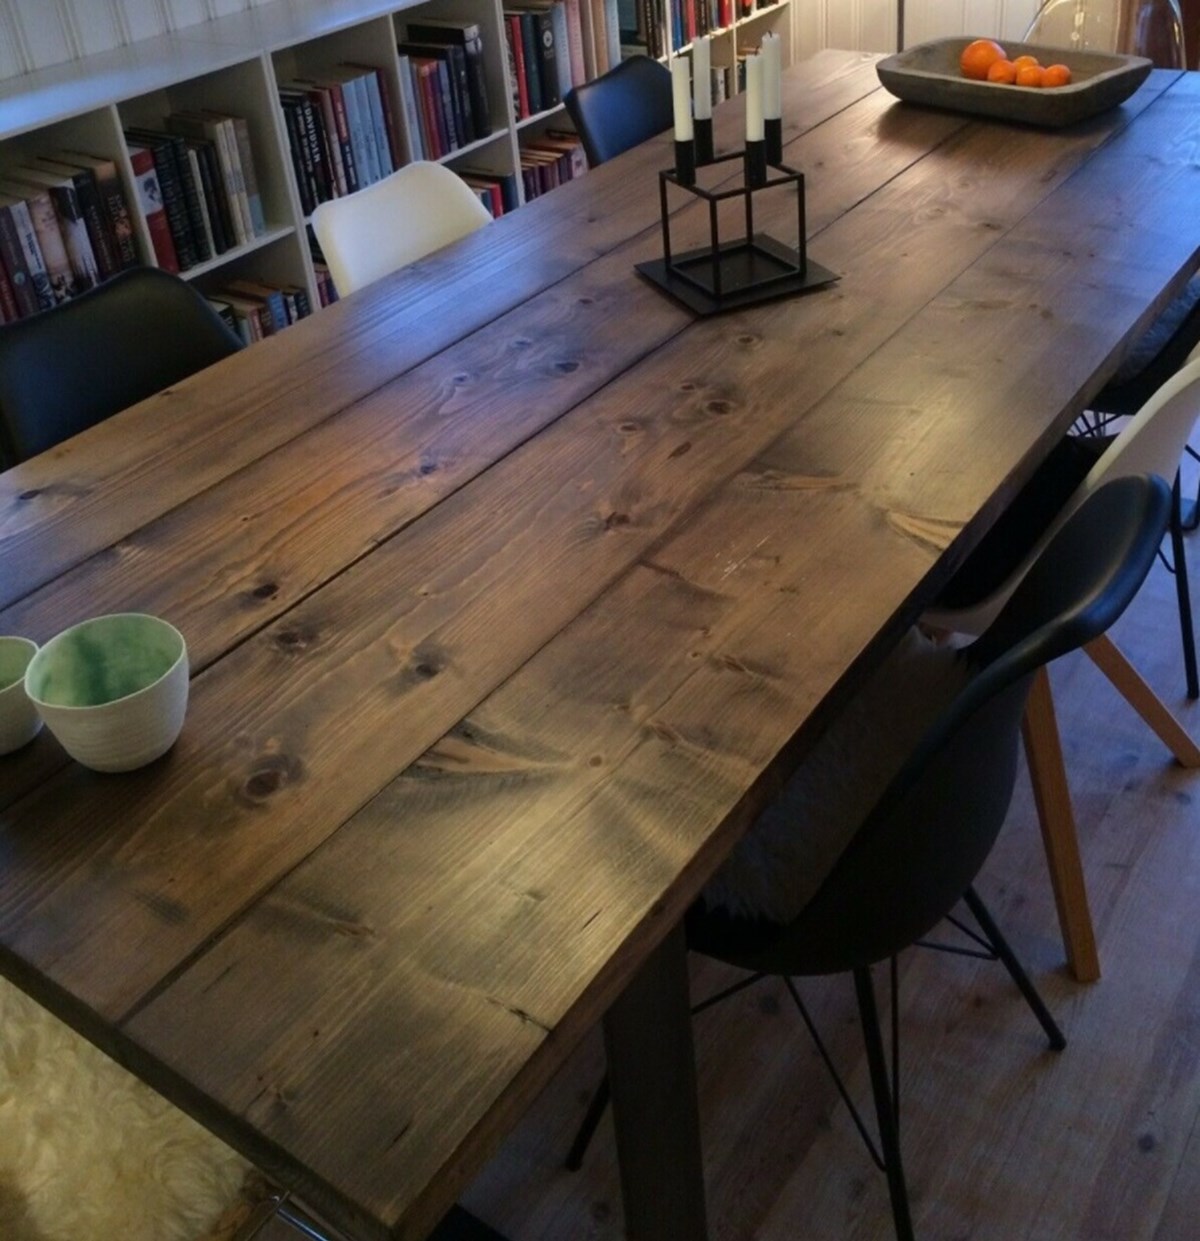 Dette plankebord kan blive dit for 4.800 kroner. Det er Jytte fra Strandby nær Frederikshavn, der har det til salg.